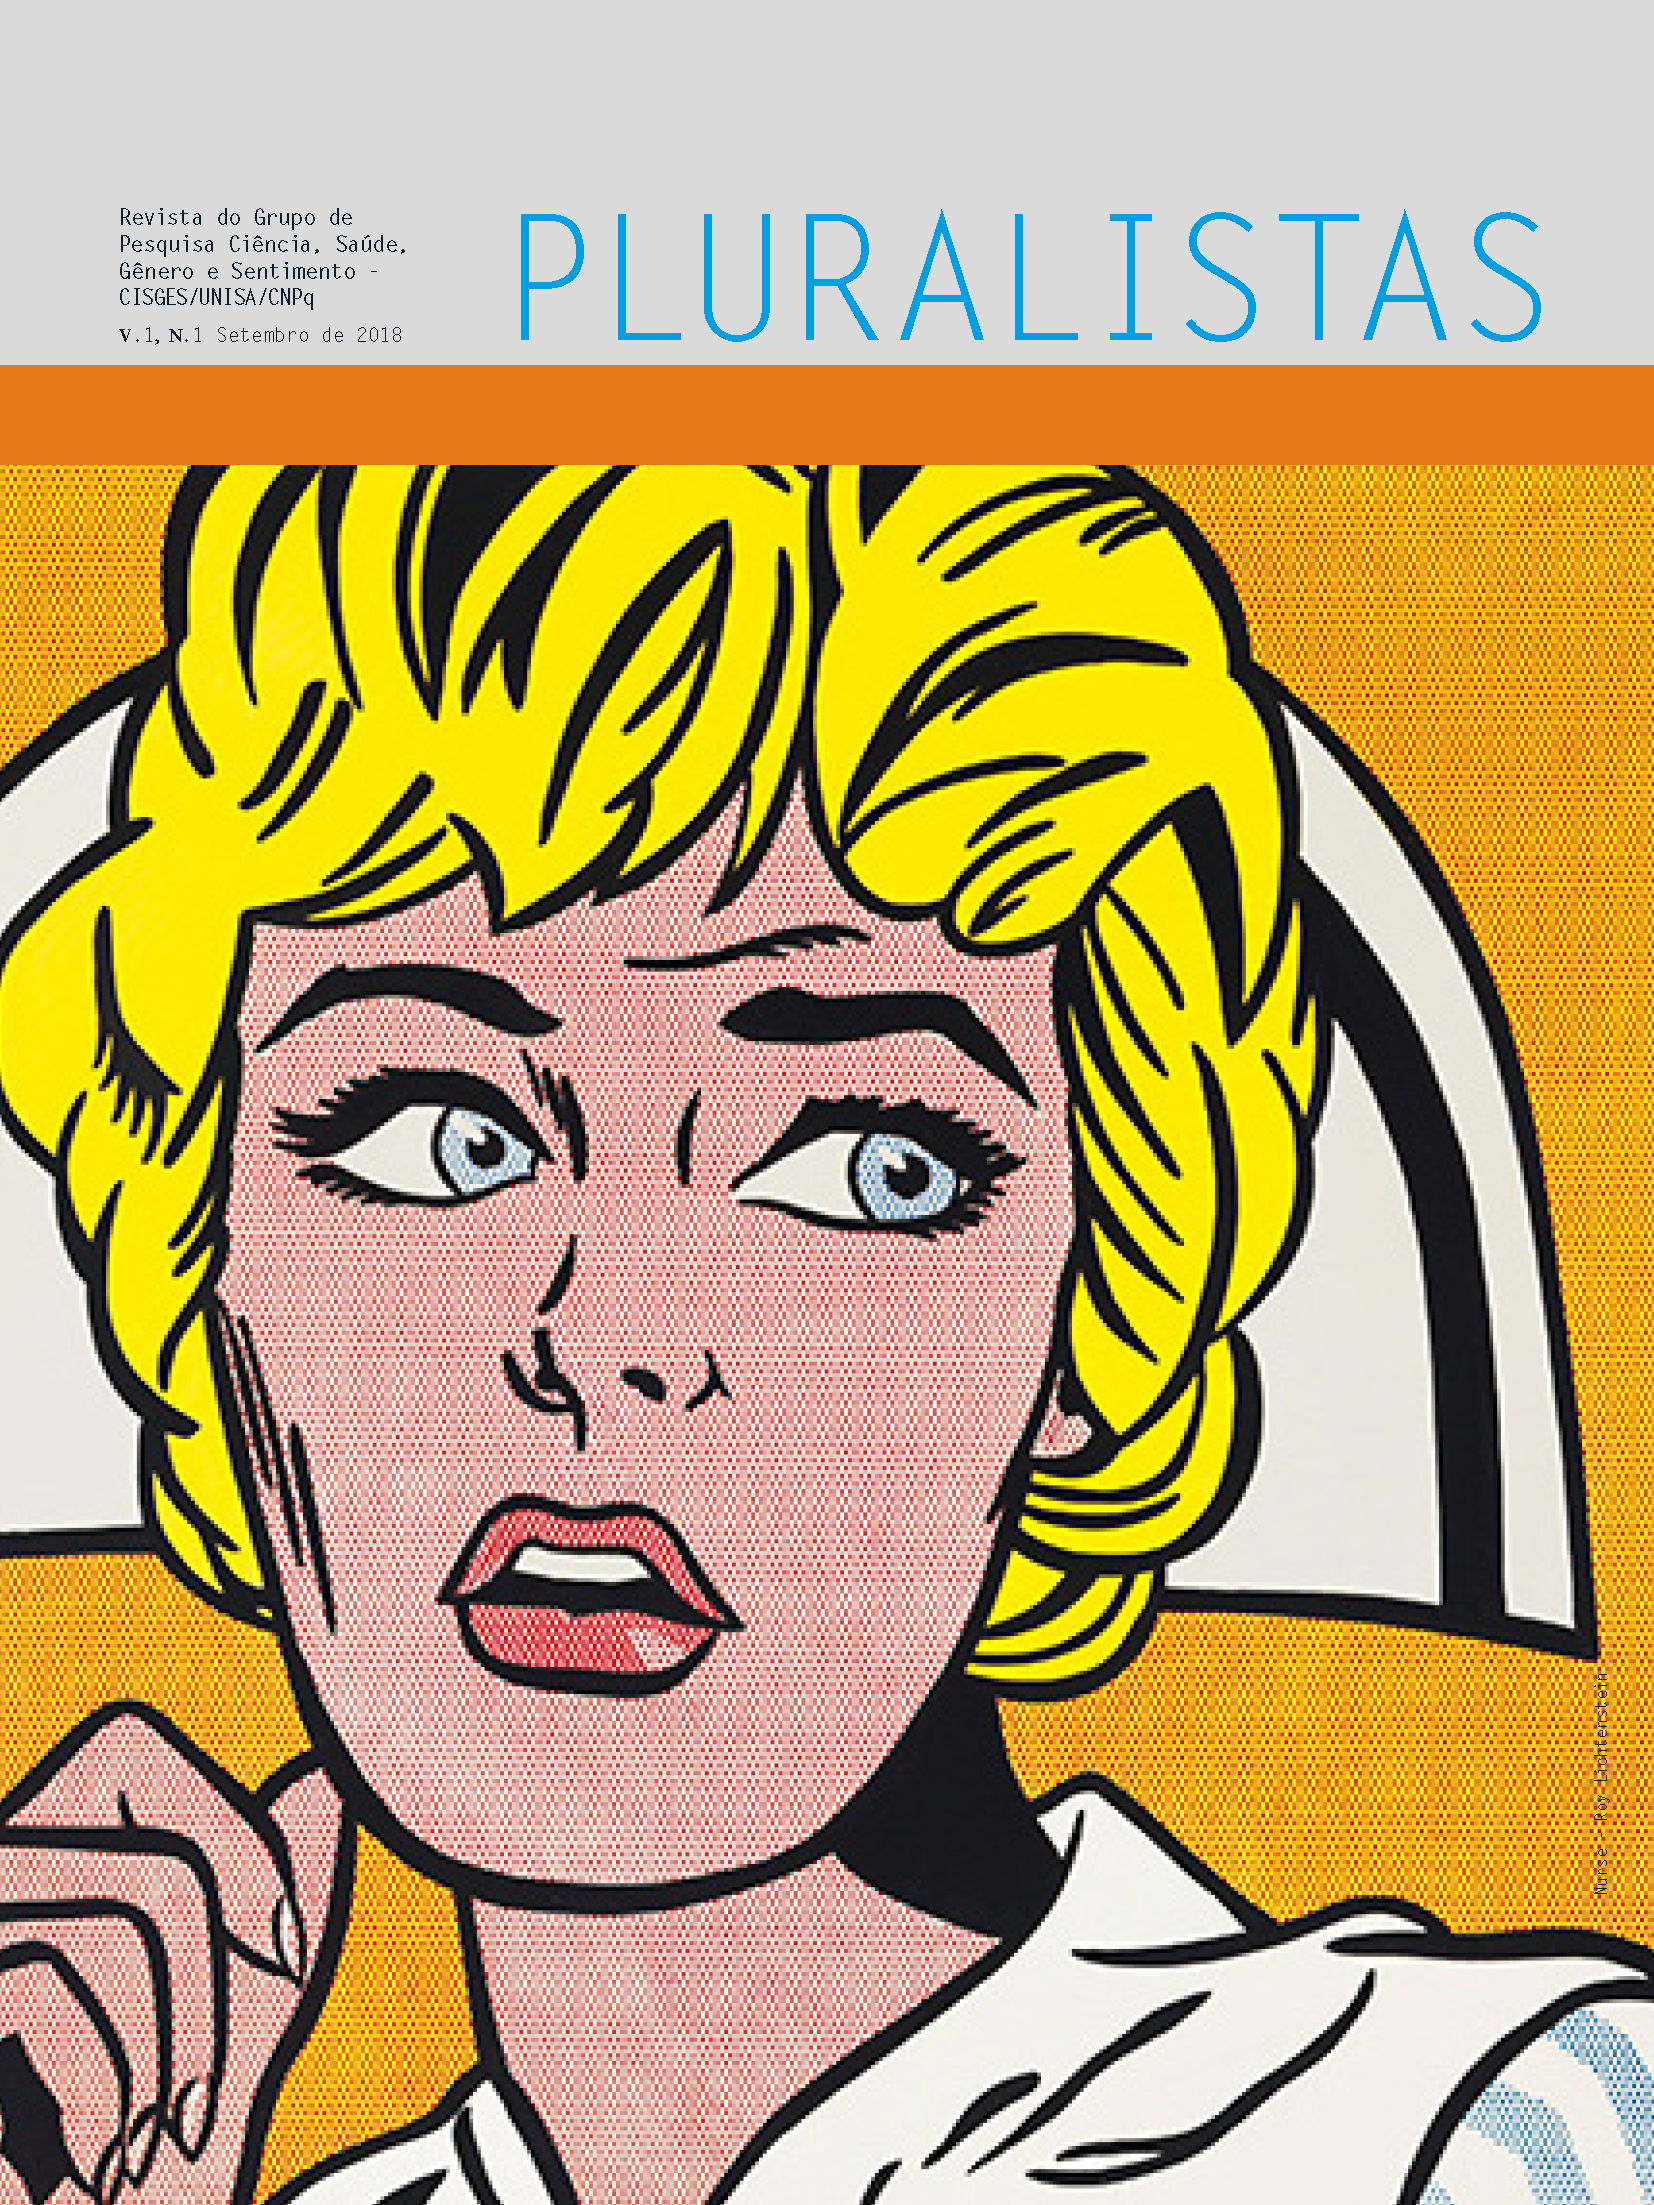 					Visualizar v. 1 n. 1 (2018): Revista Pluralistas - Revista do Grupo de Pesquisa Ciência, Saúde, Gênero e Sentimento - CISGES/UNISA/CNpq
				